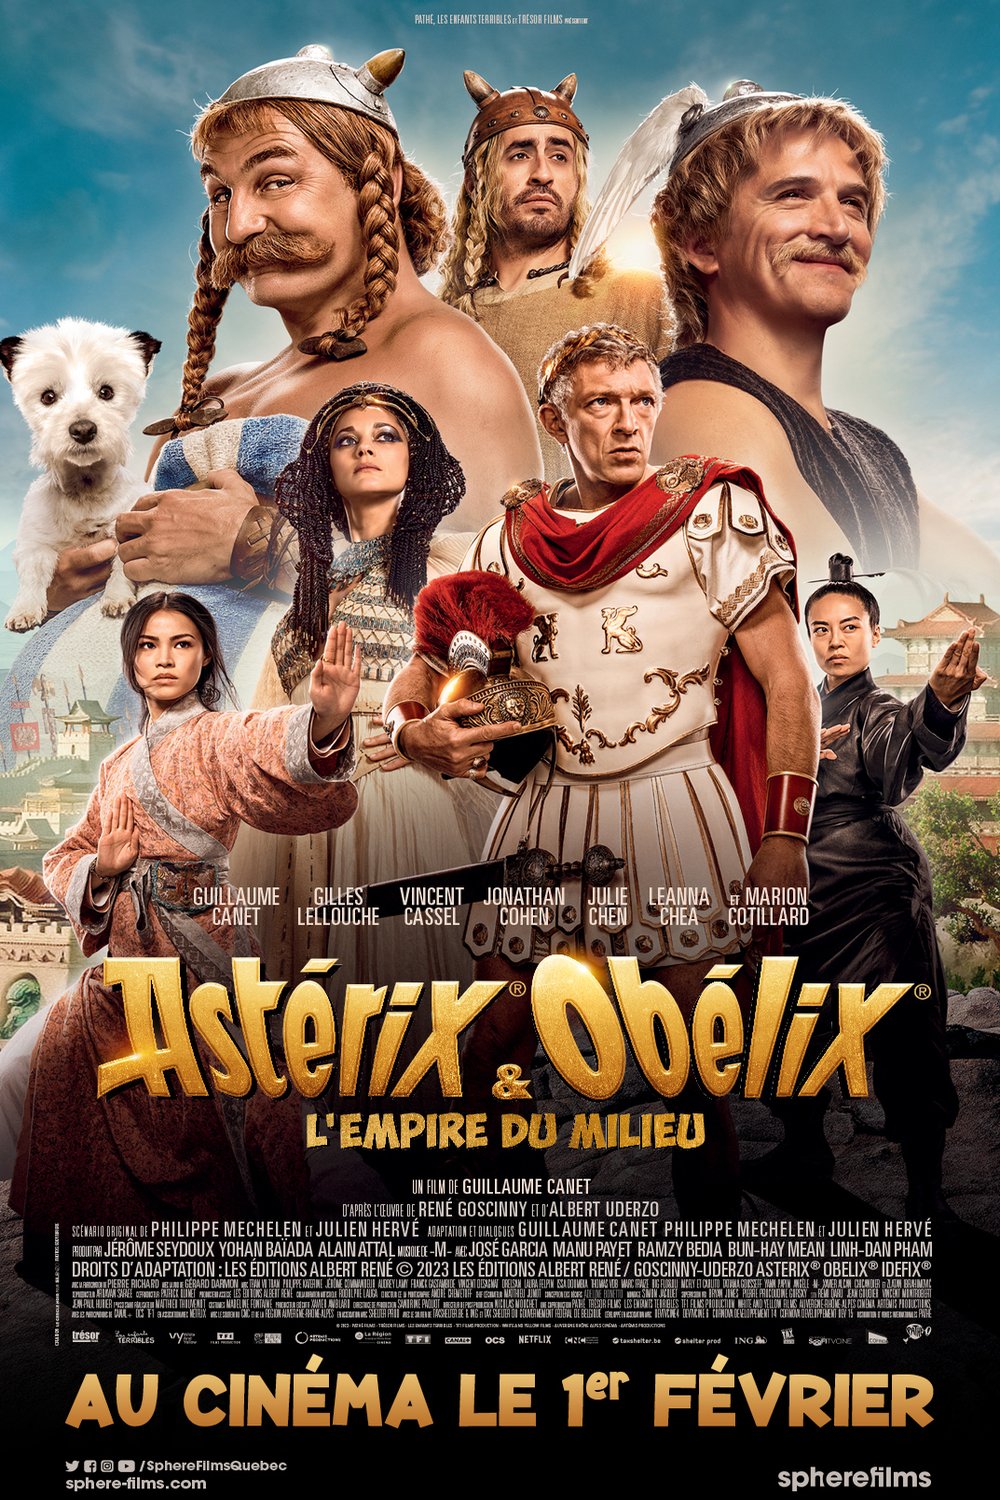 L'affiche du film Asterix & Obelix: The Middle Kingdom